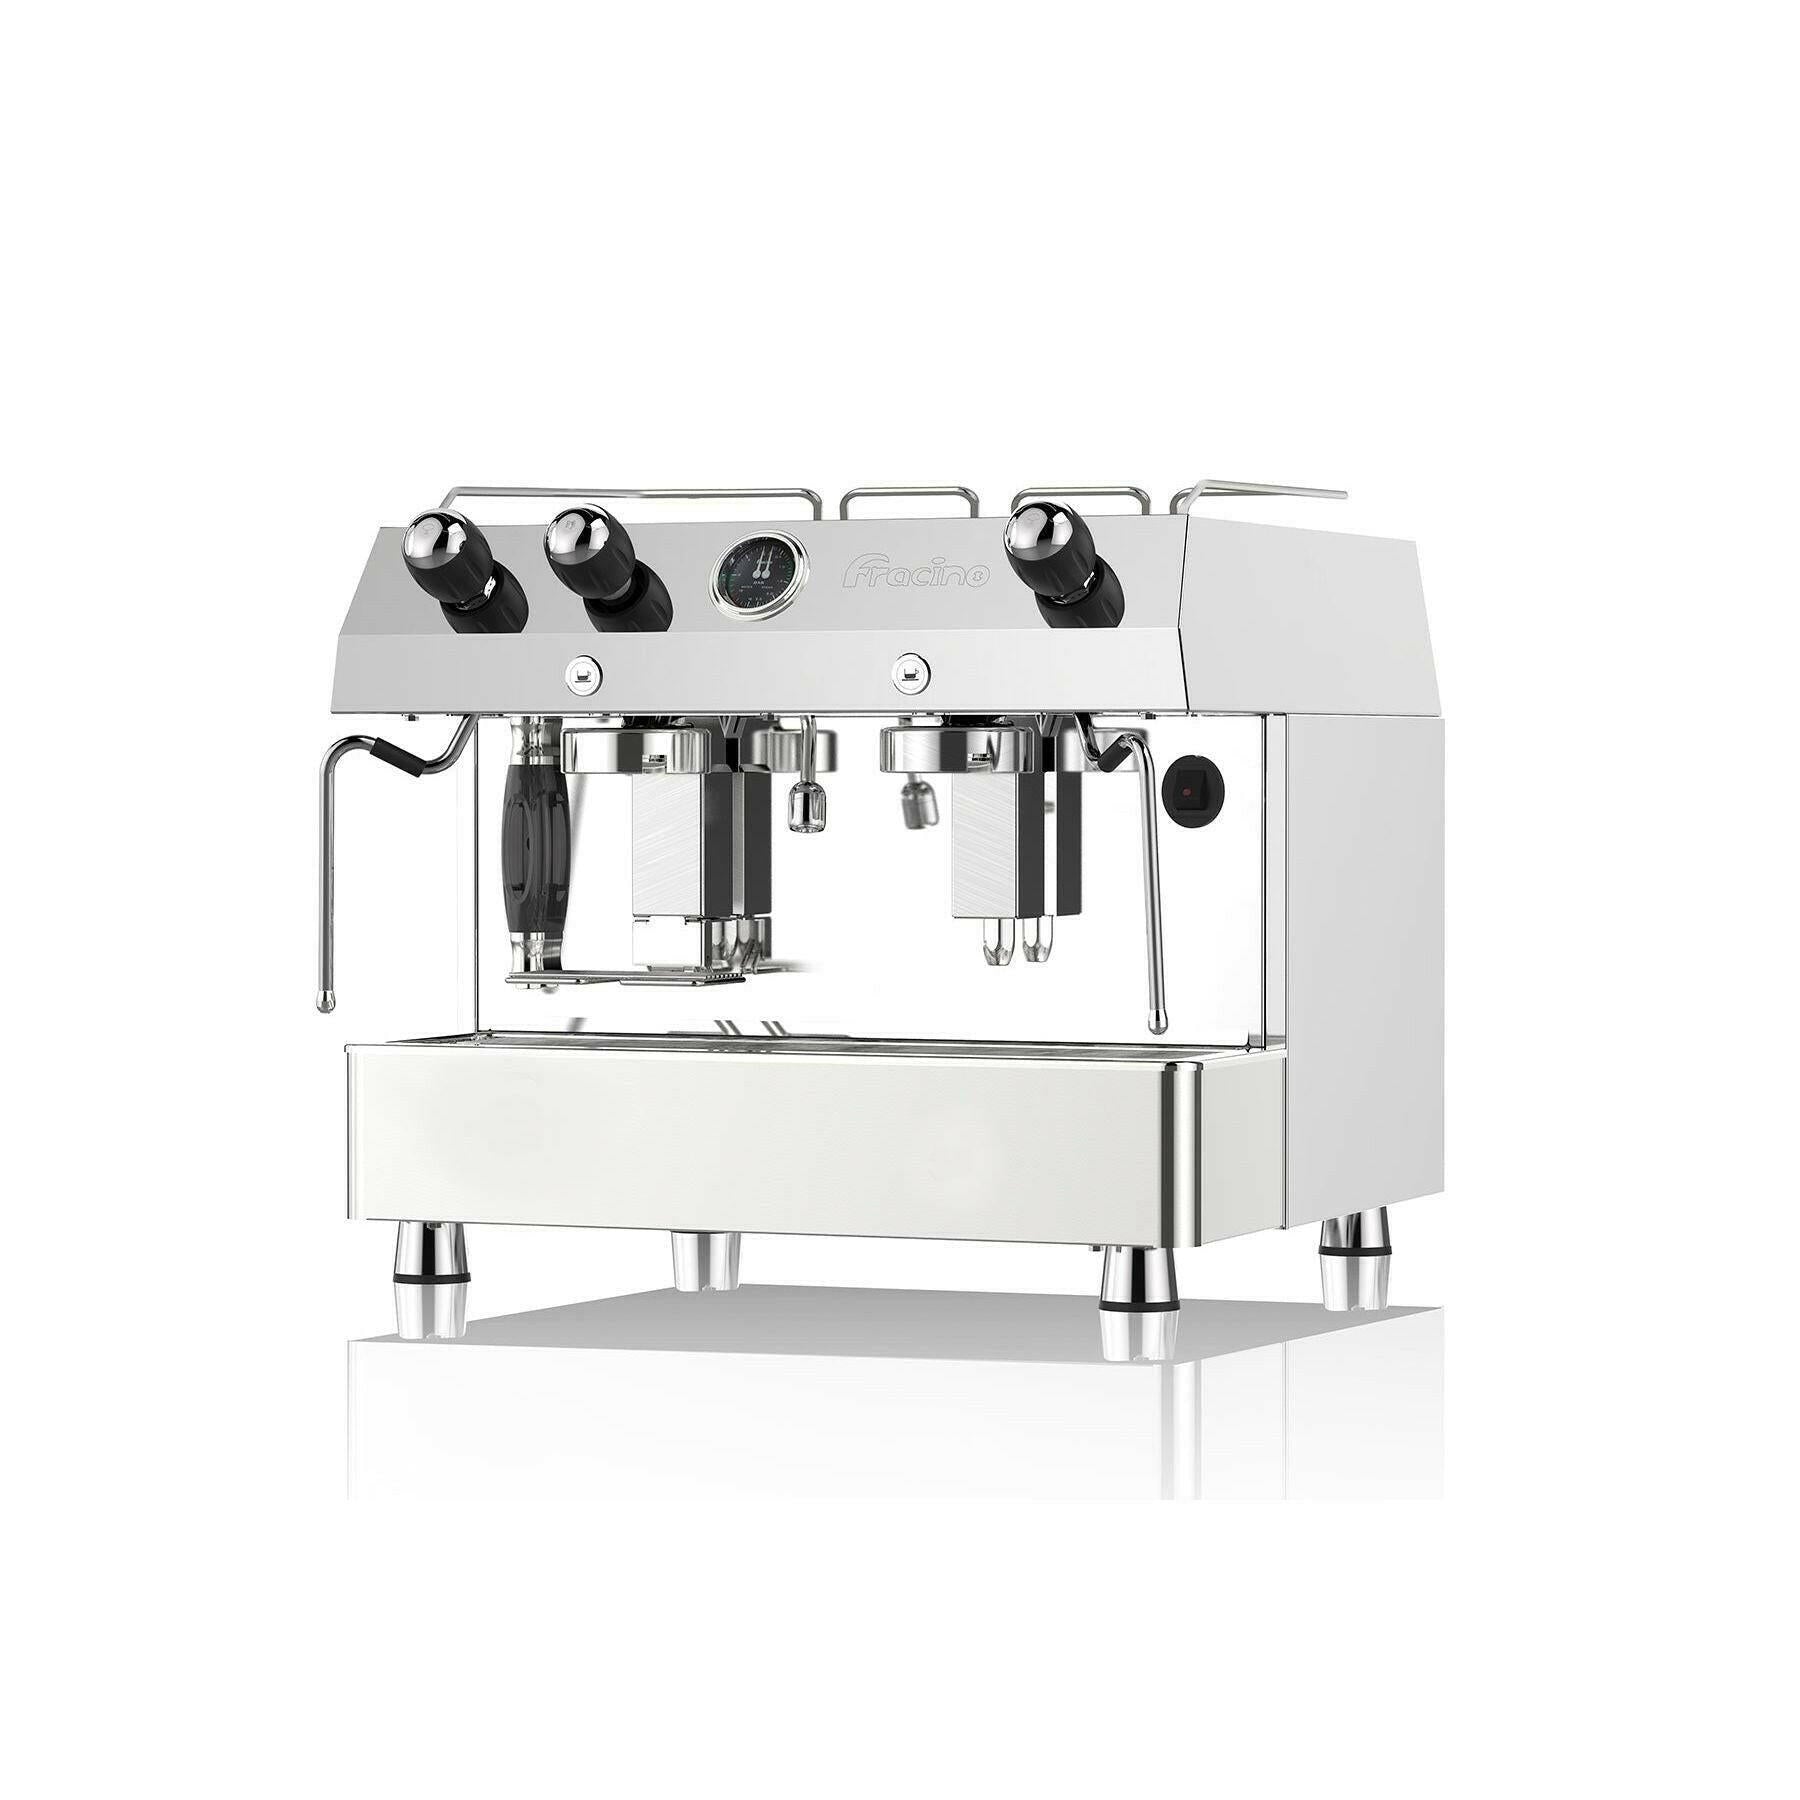 Fracino Contempo Semi Automatic Dual Fuel 2 Group Espresso Coffee Machine